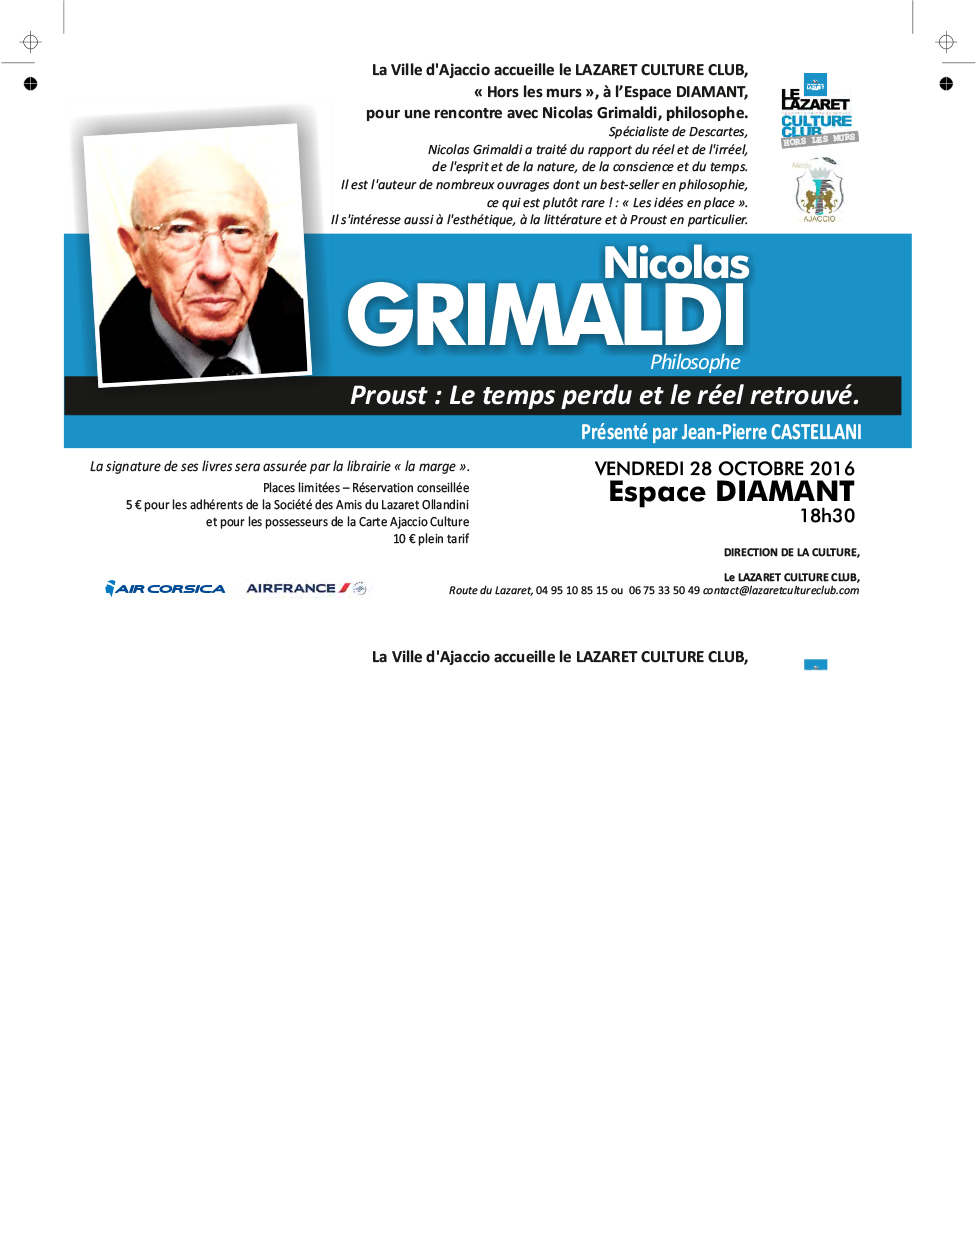 Vendredi 28 octobre, 18h30: Rencontre avec le philosophe Nicolas Grimaldi "Proust : Le temps perdu et le réel retrouvé"